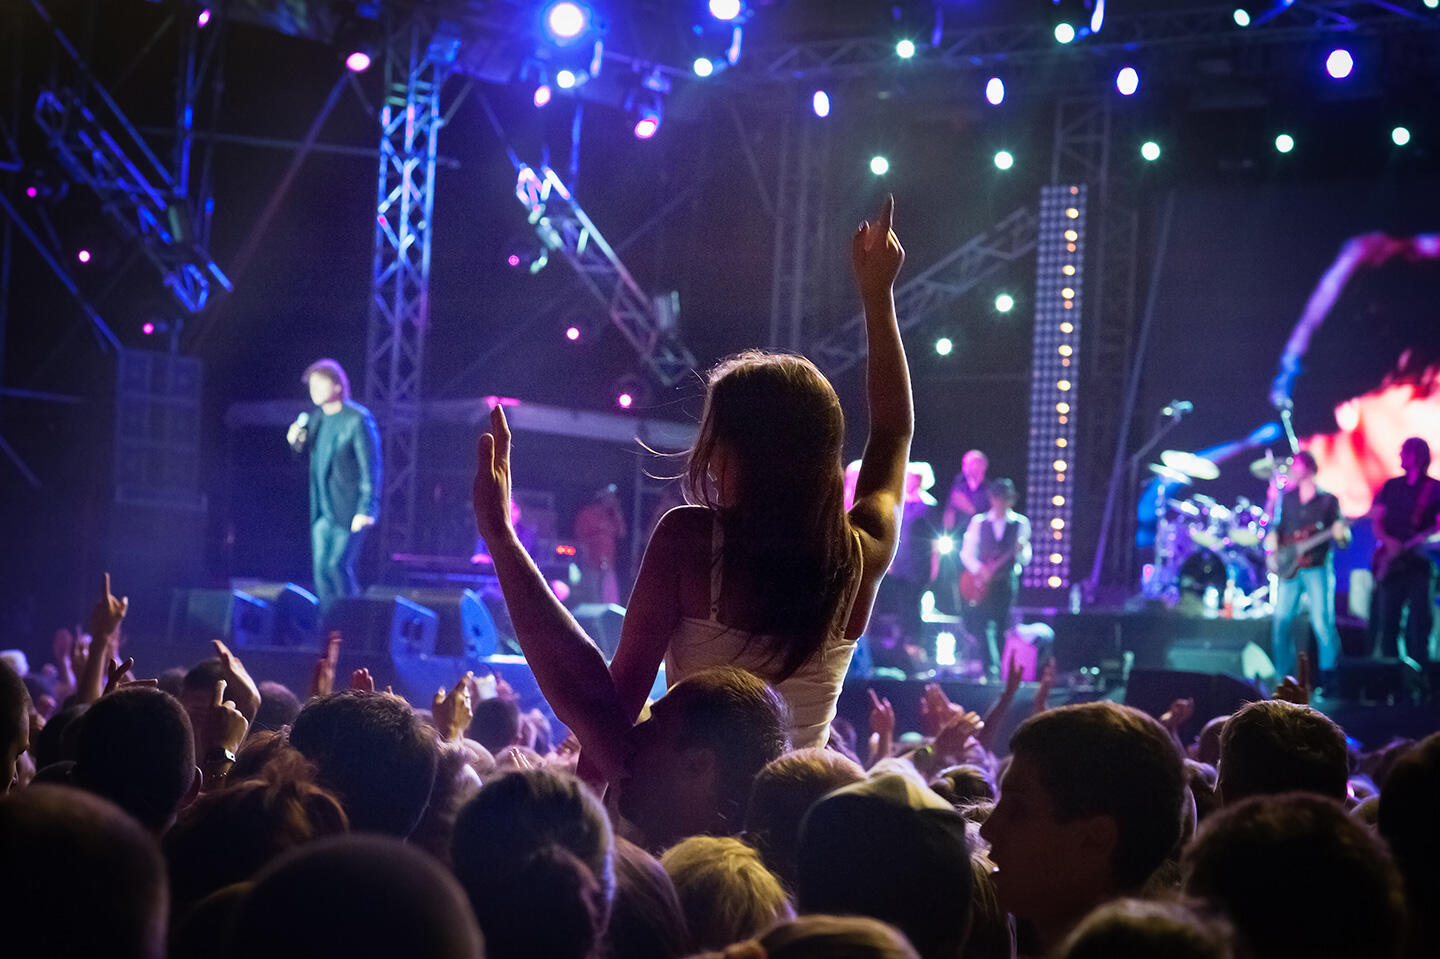 Begeisterte Zuschauerin auf den Schultern eines Festivalbesuchers bei den Francofolies in La Rochelle, Konzertbühne im Hintergrund.